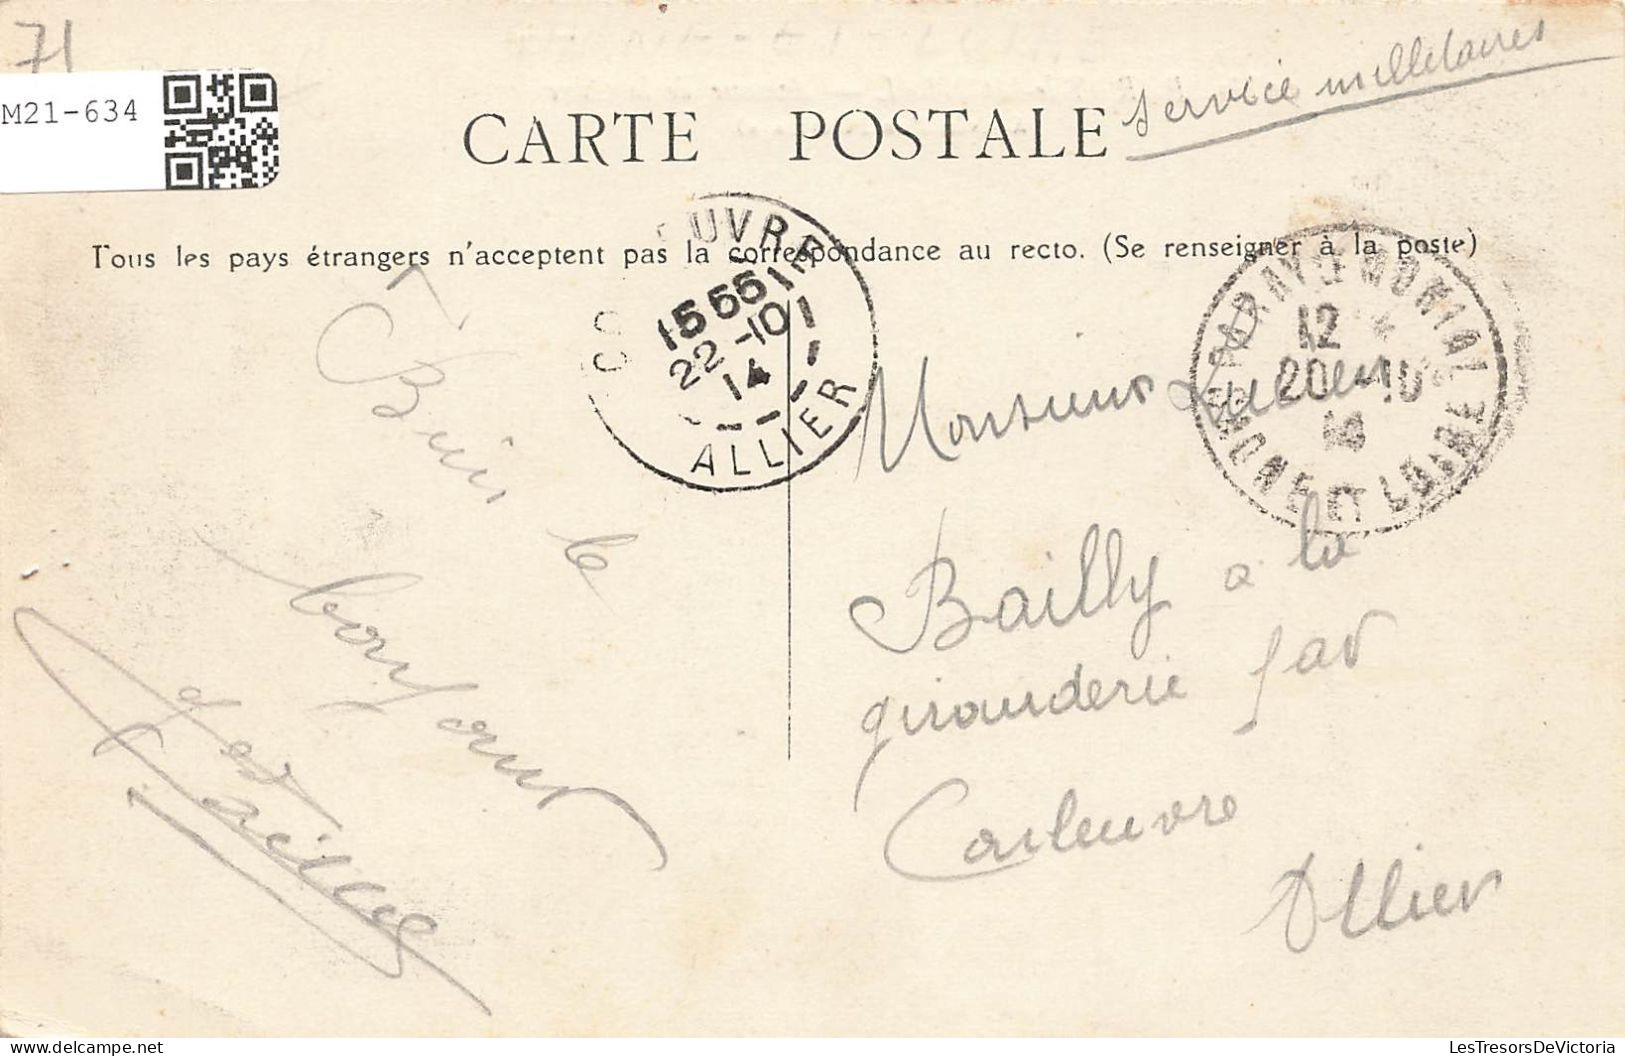 FRANCE - Paray Le Monial - Avenue De La Gare - Arrivée D'un Pèlerinage - Animé - Carte Postale Ancienne - Paray Le Monial